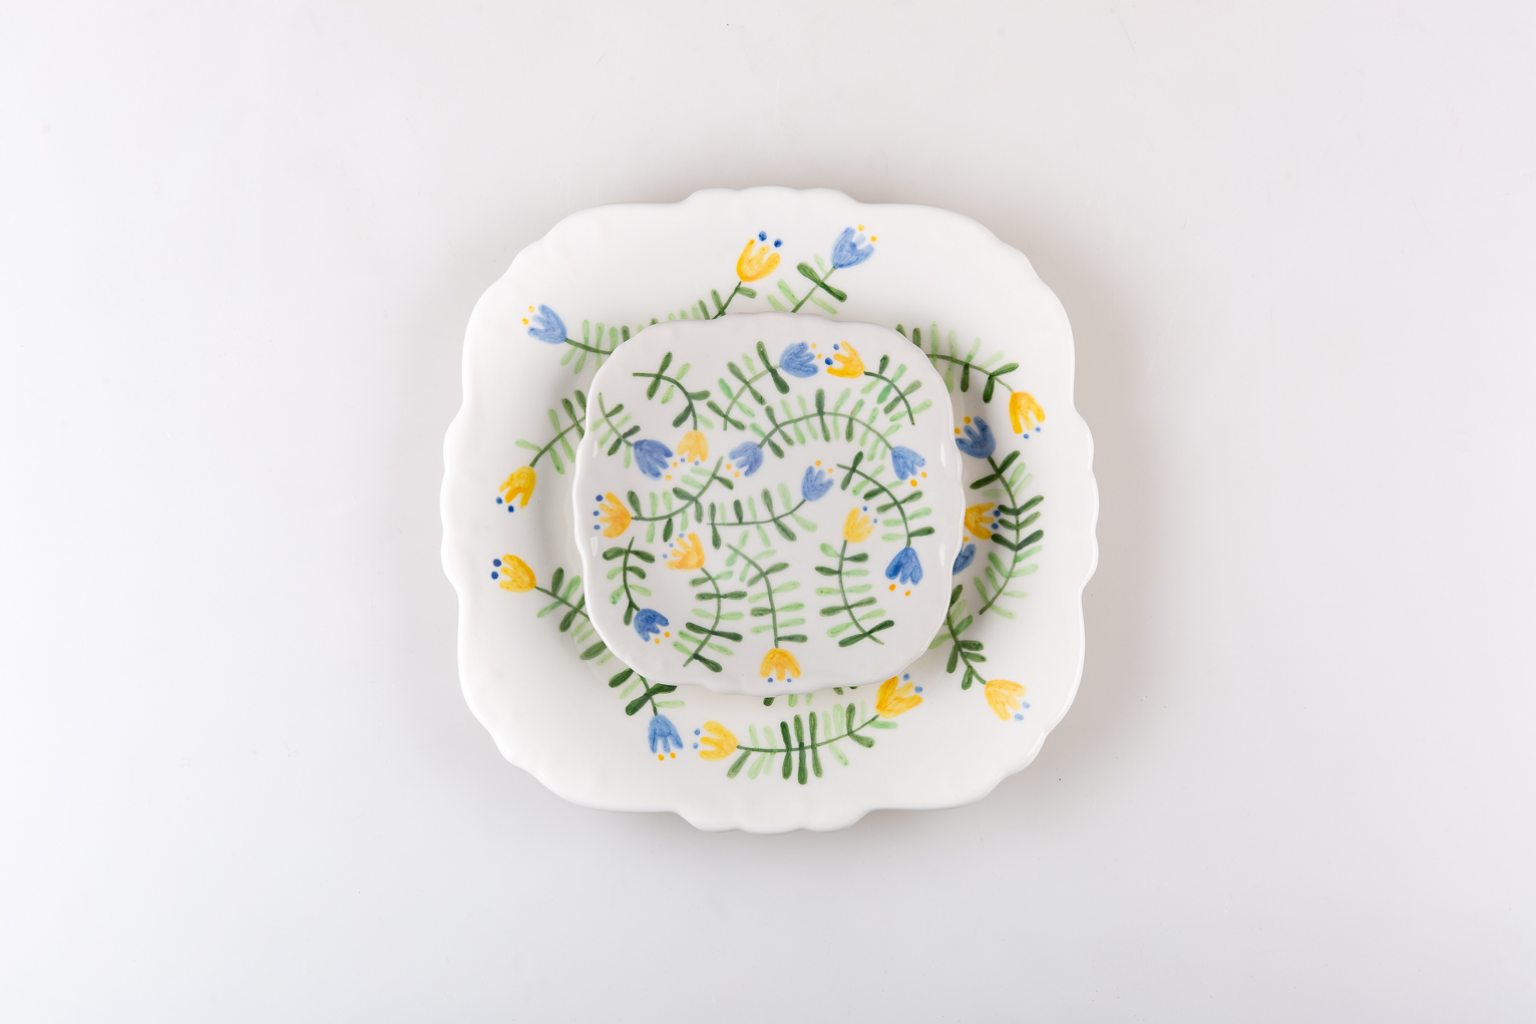 Grand et petit plat en céramique avec fleurs